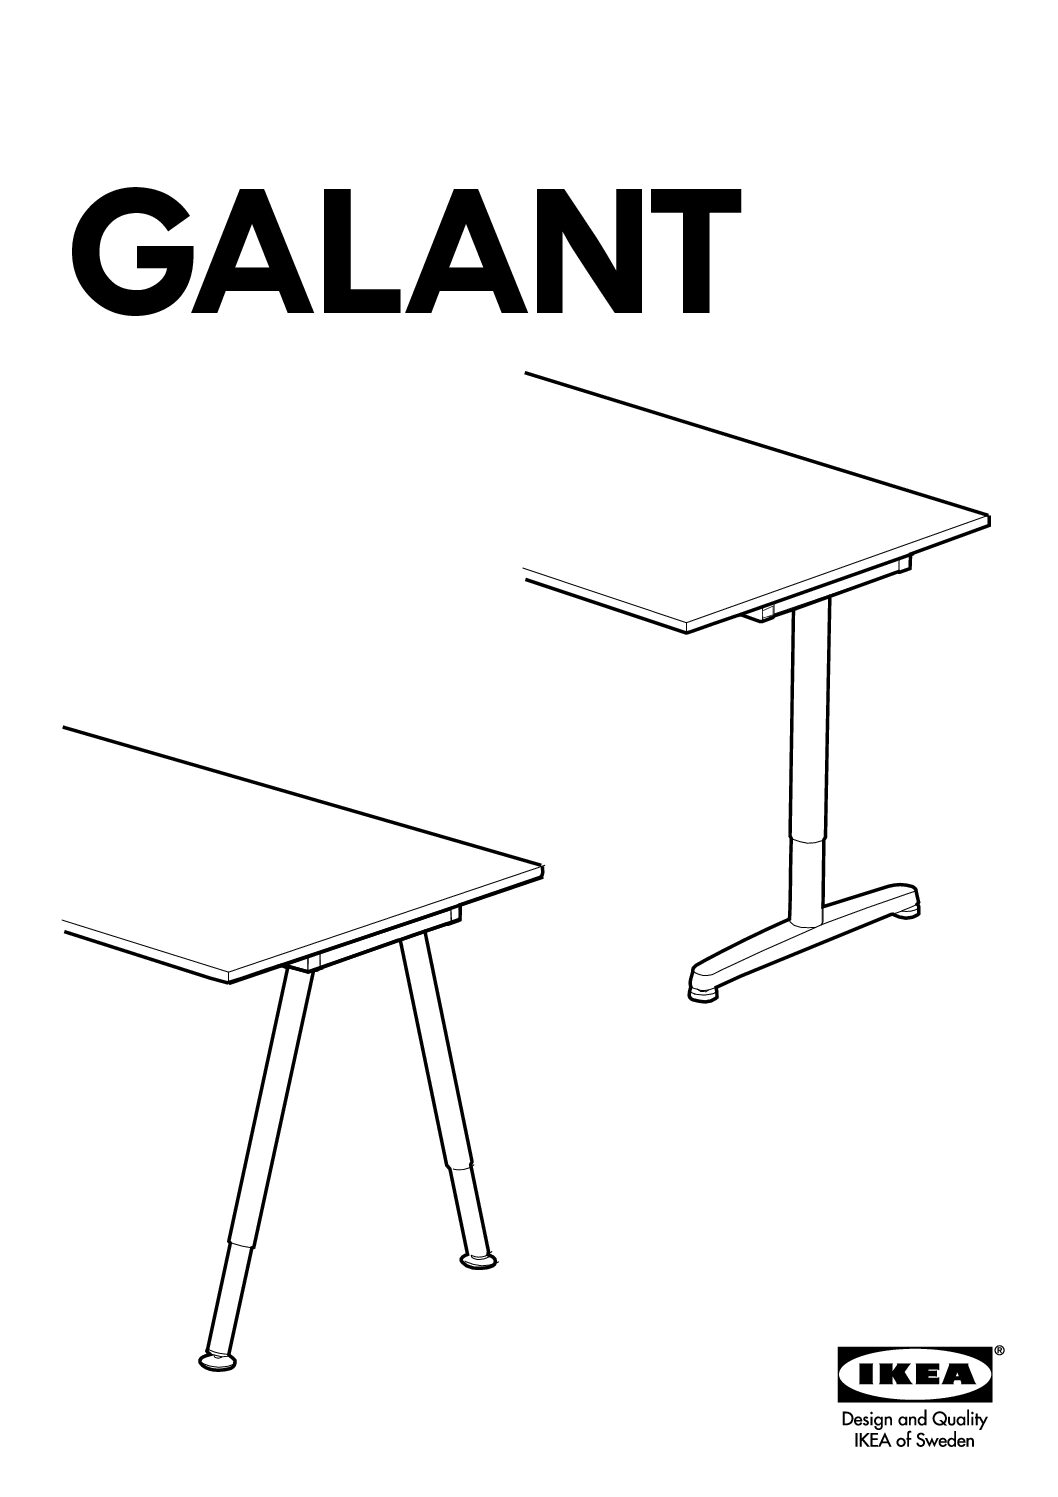 Ikea Galant Seite 32 Bedienungsanleitung